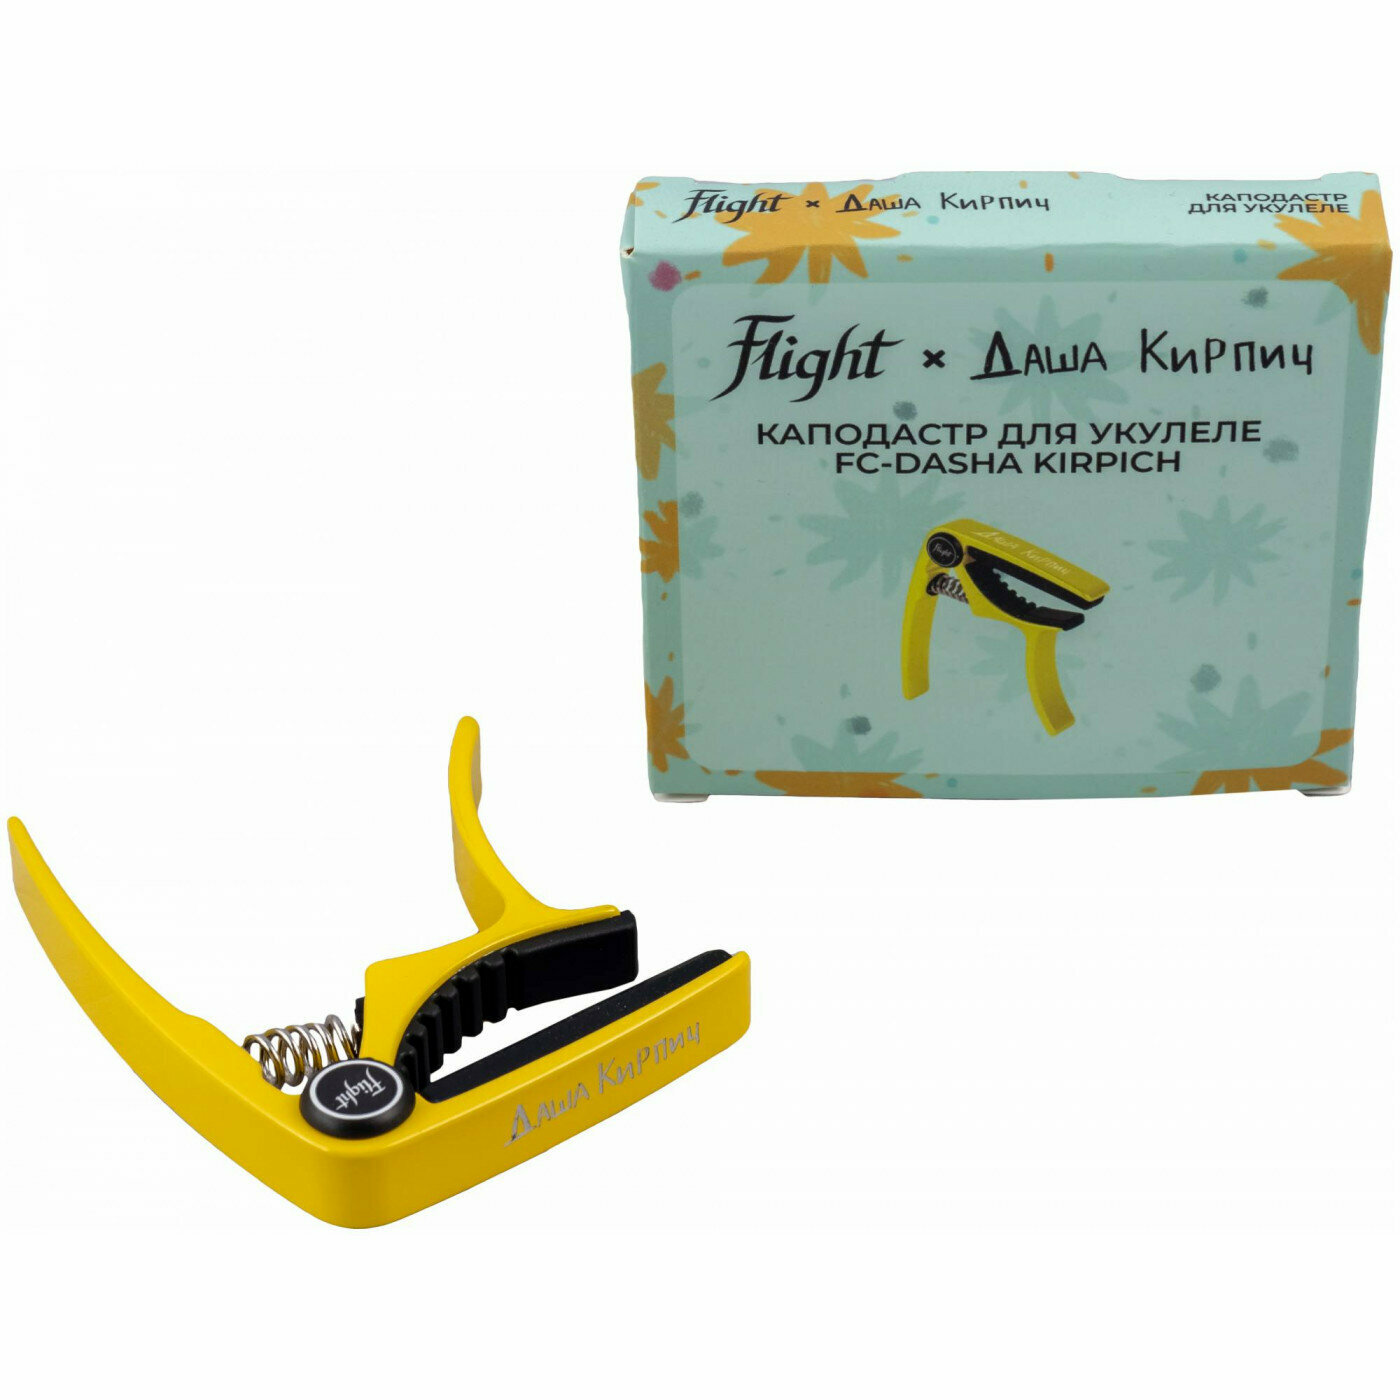 FLIGHT FC-DASHA KIRPICH каподастр для укулеле подписная модель Даши Кирпич цвет желтый